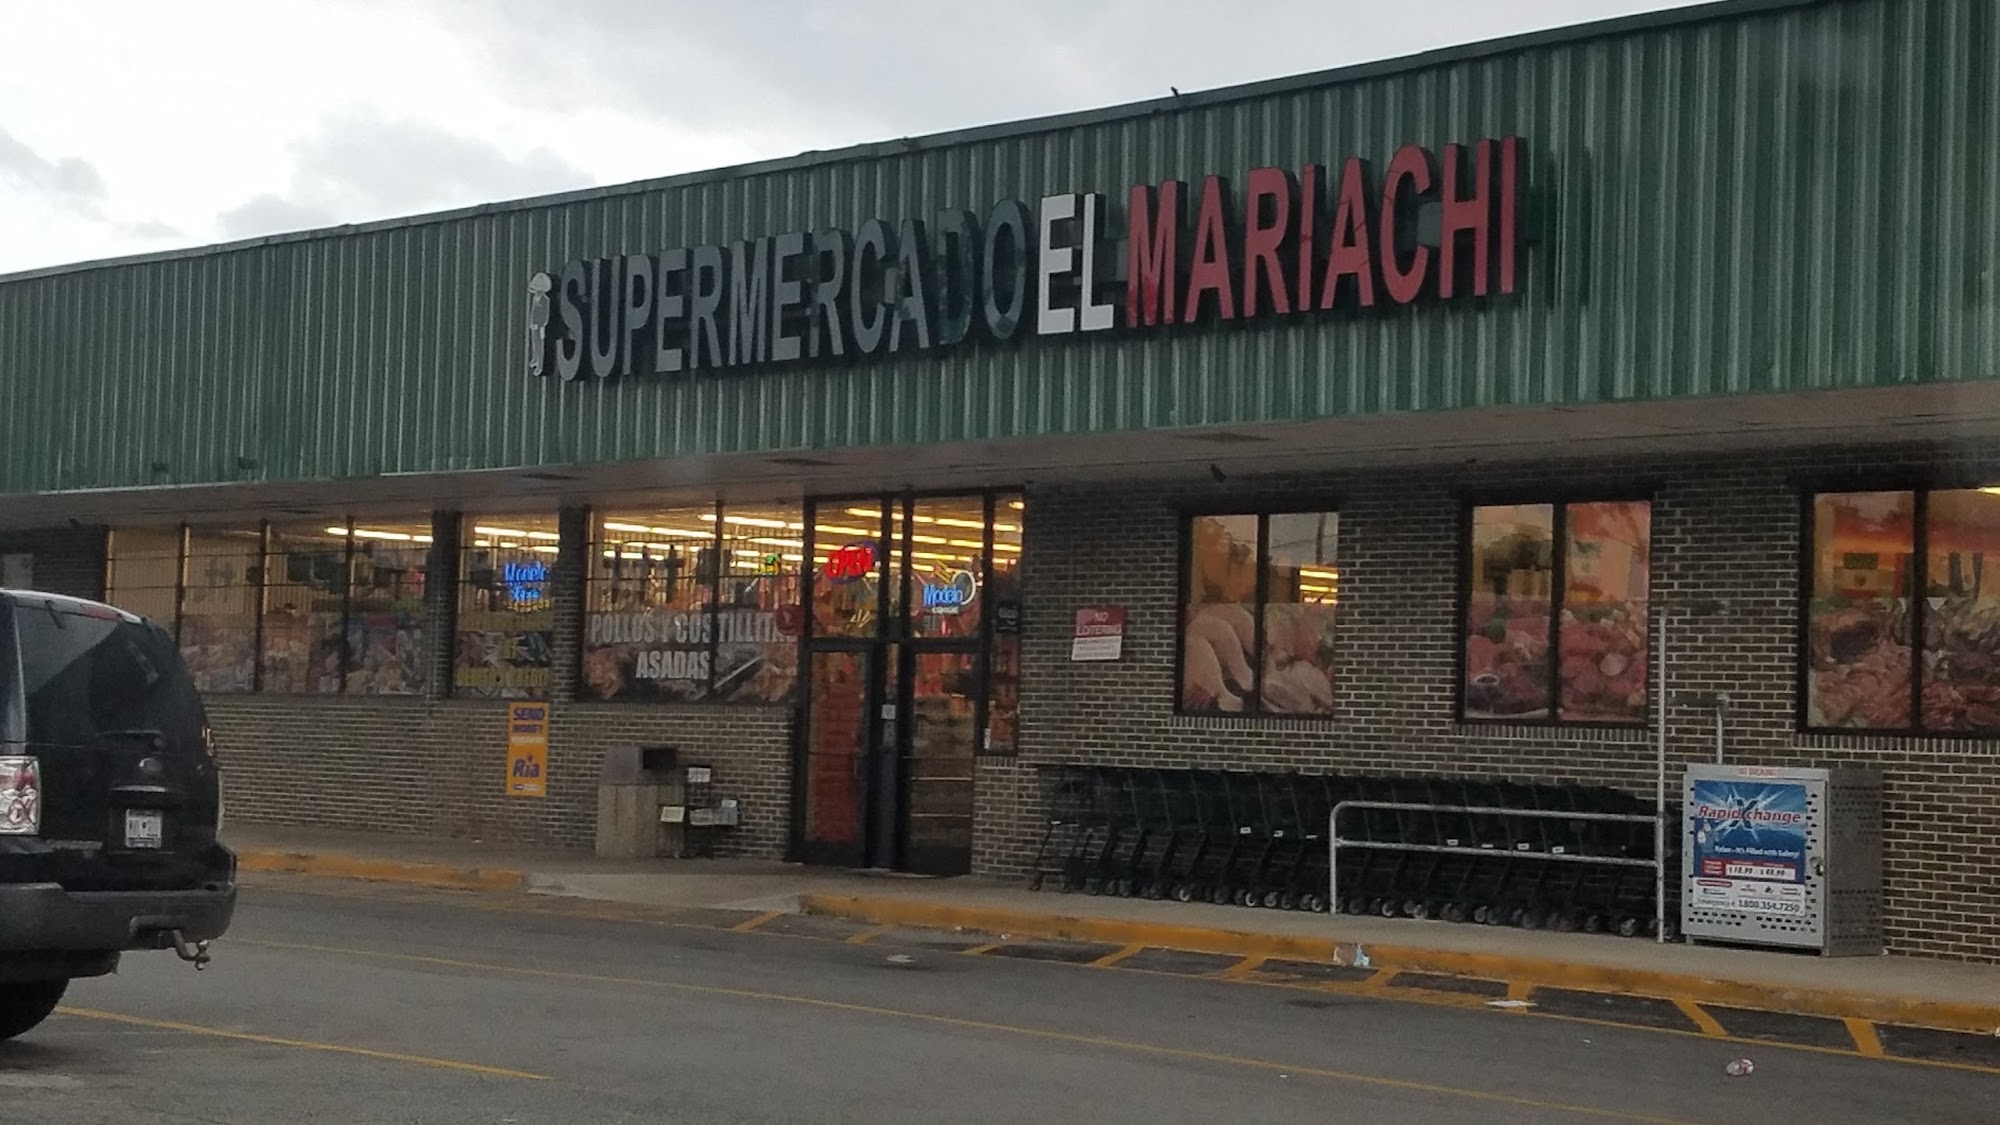 Supermercado El Mariachi